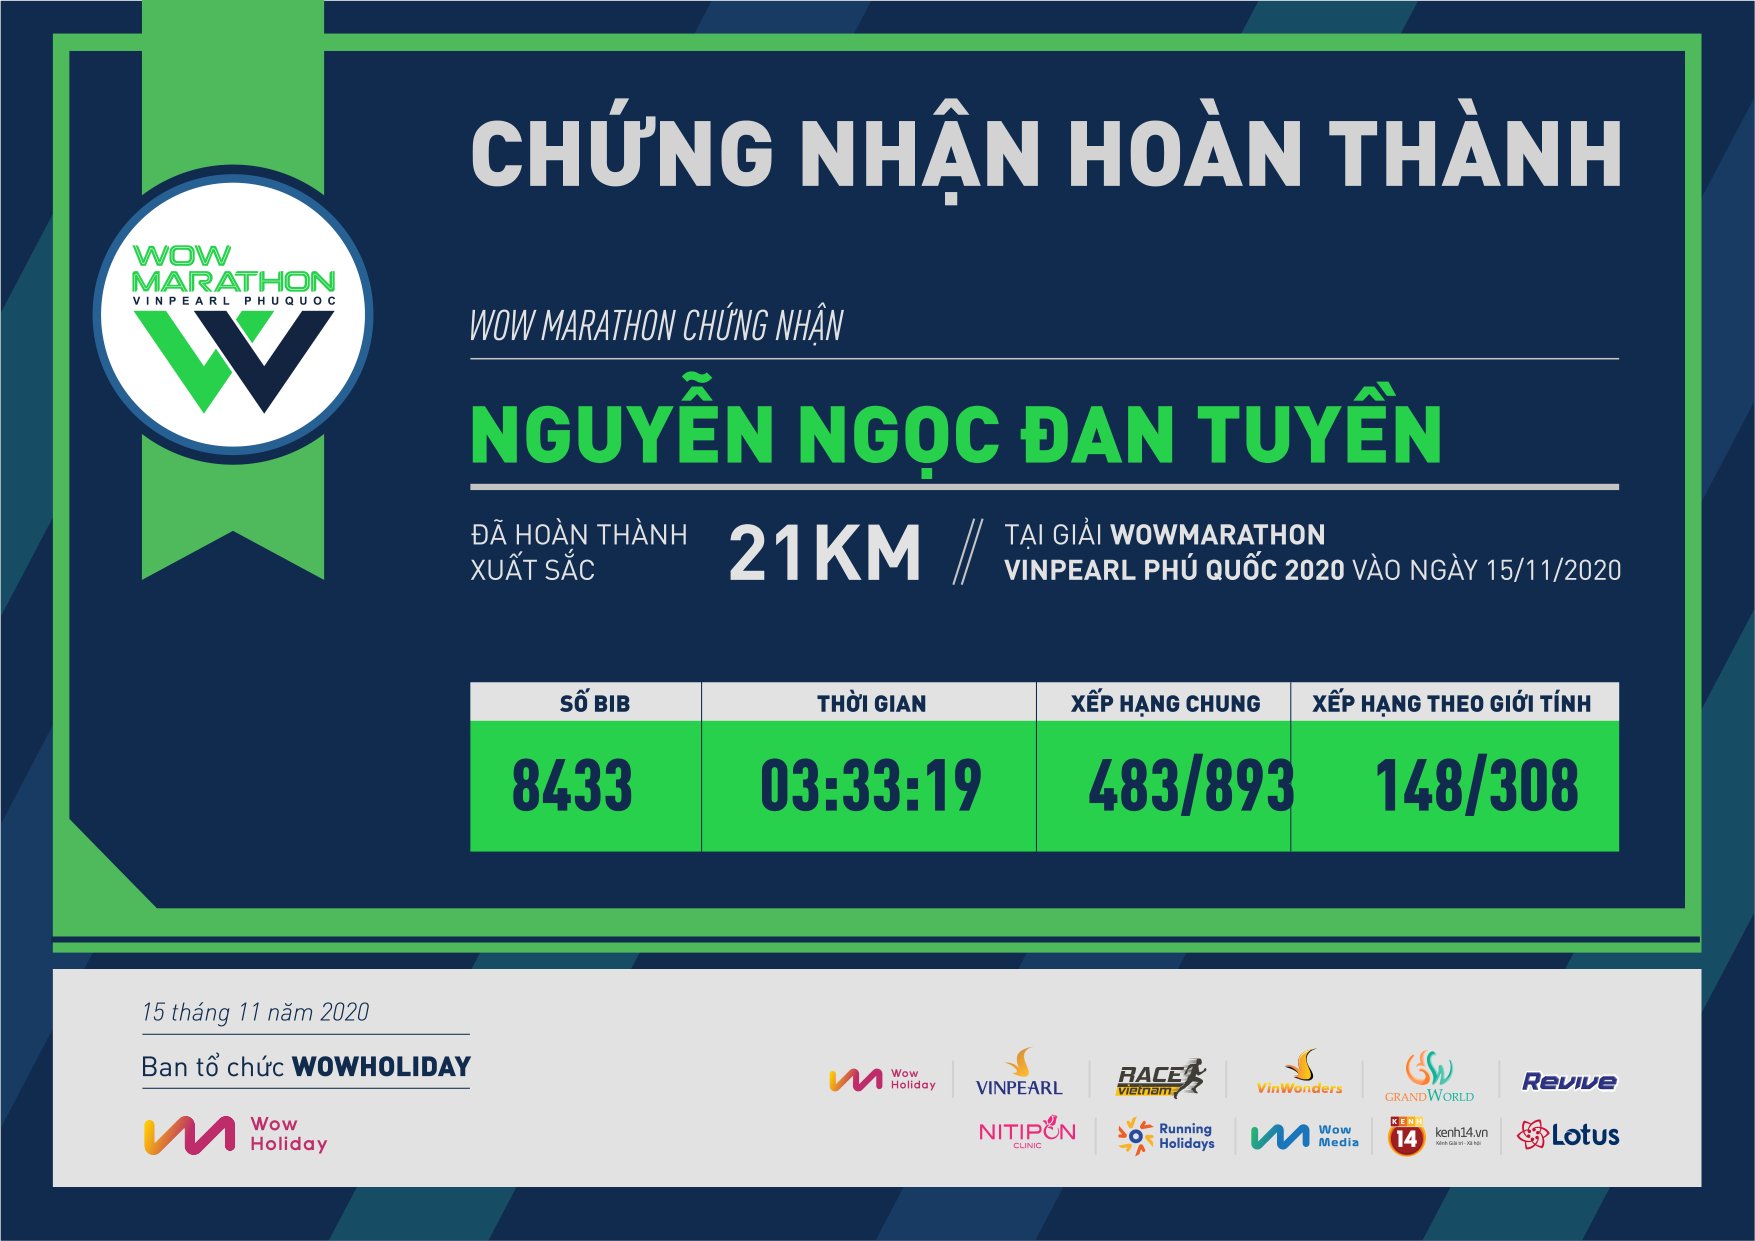 8433 - Nguyễn Ngọc Đan Tuyền